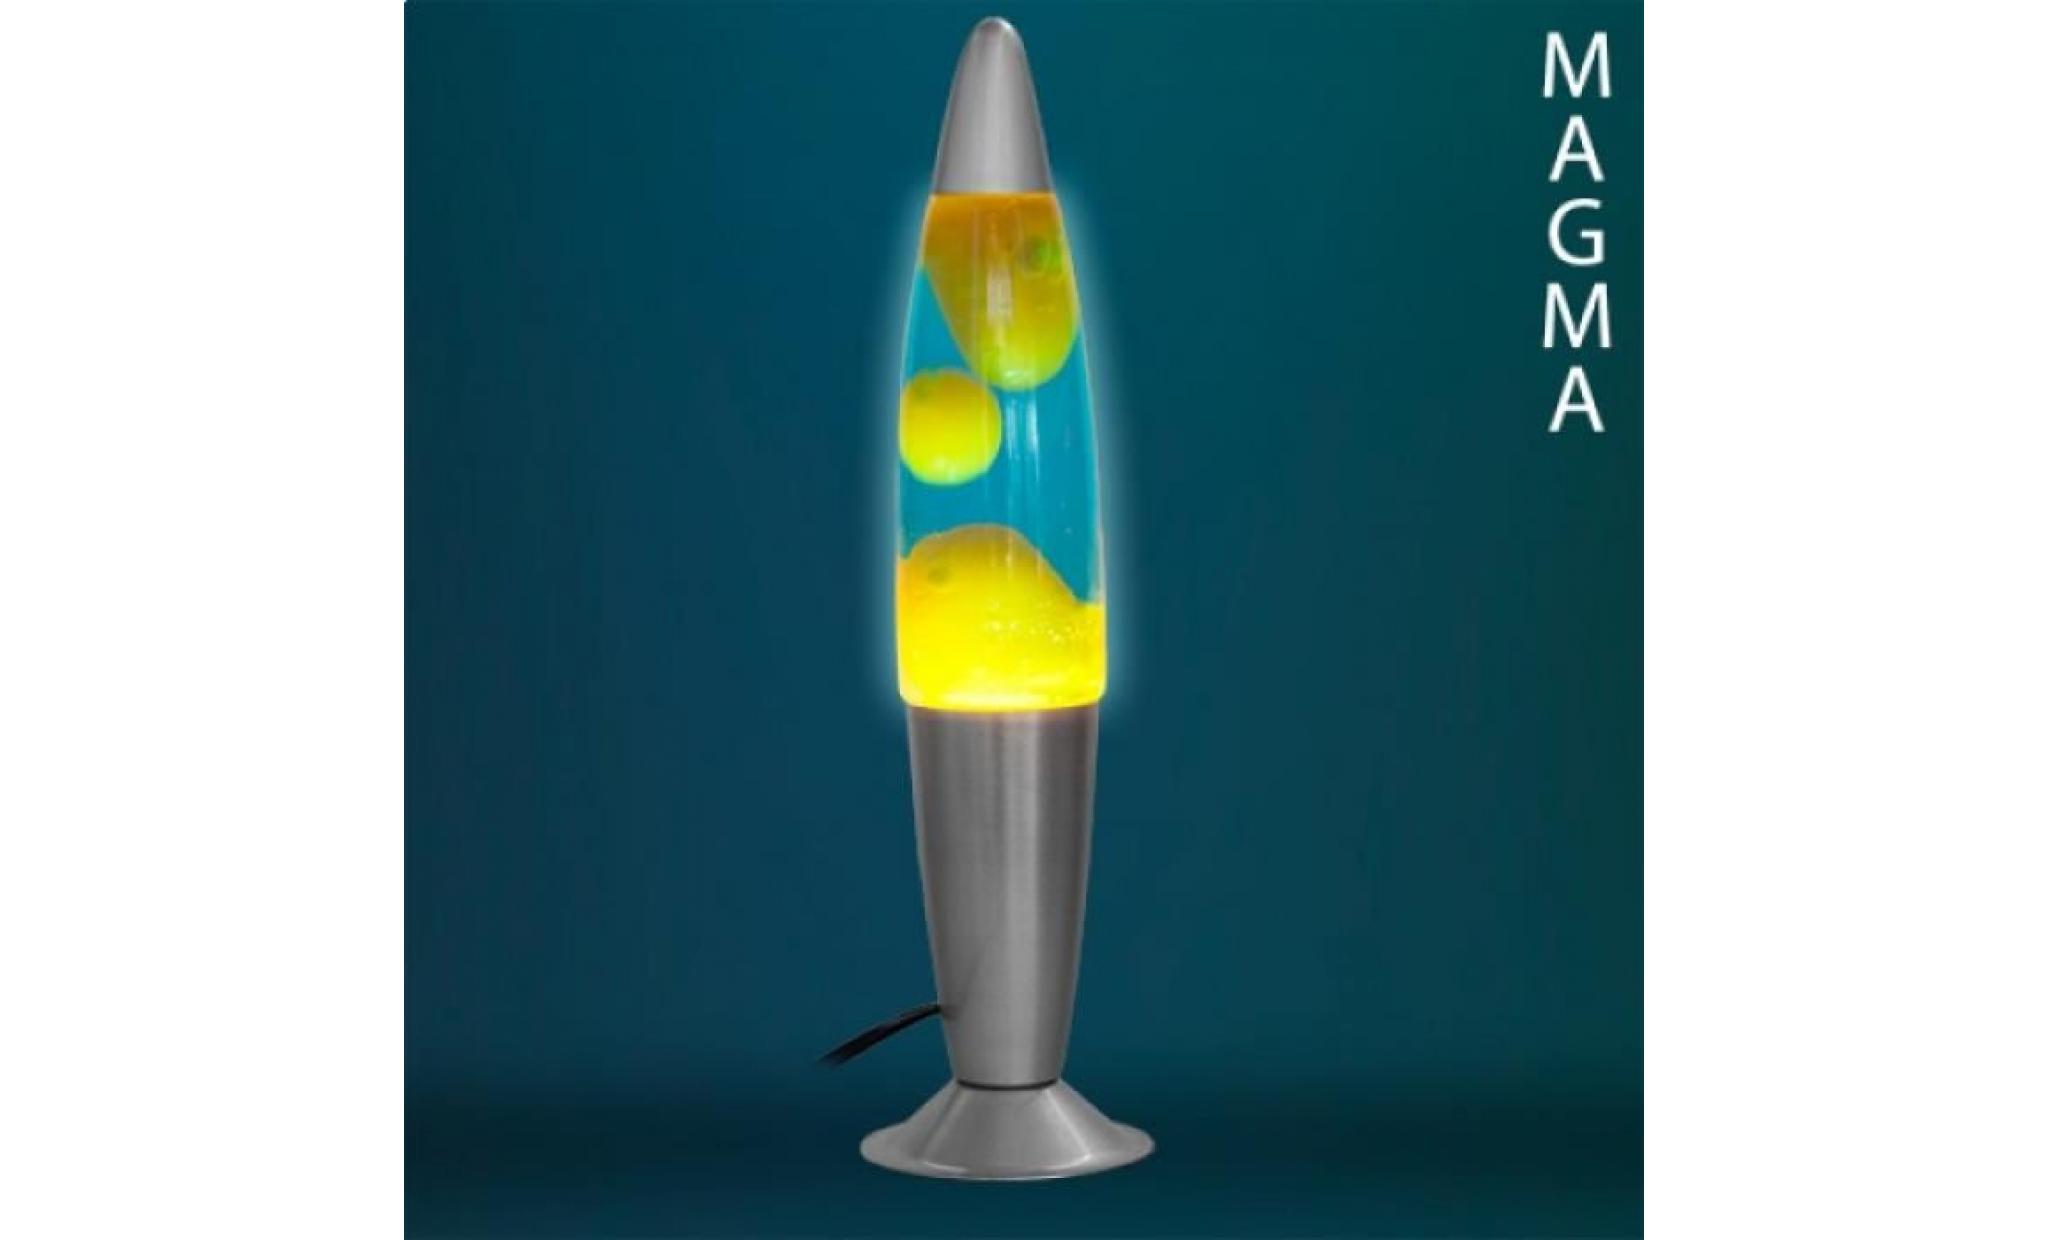 Lampe à Lave Magma fusée bleu